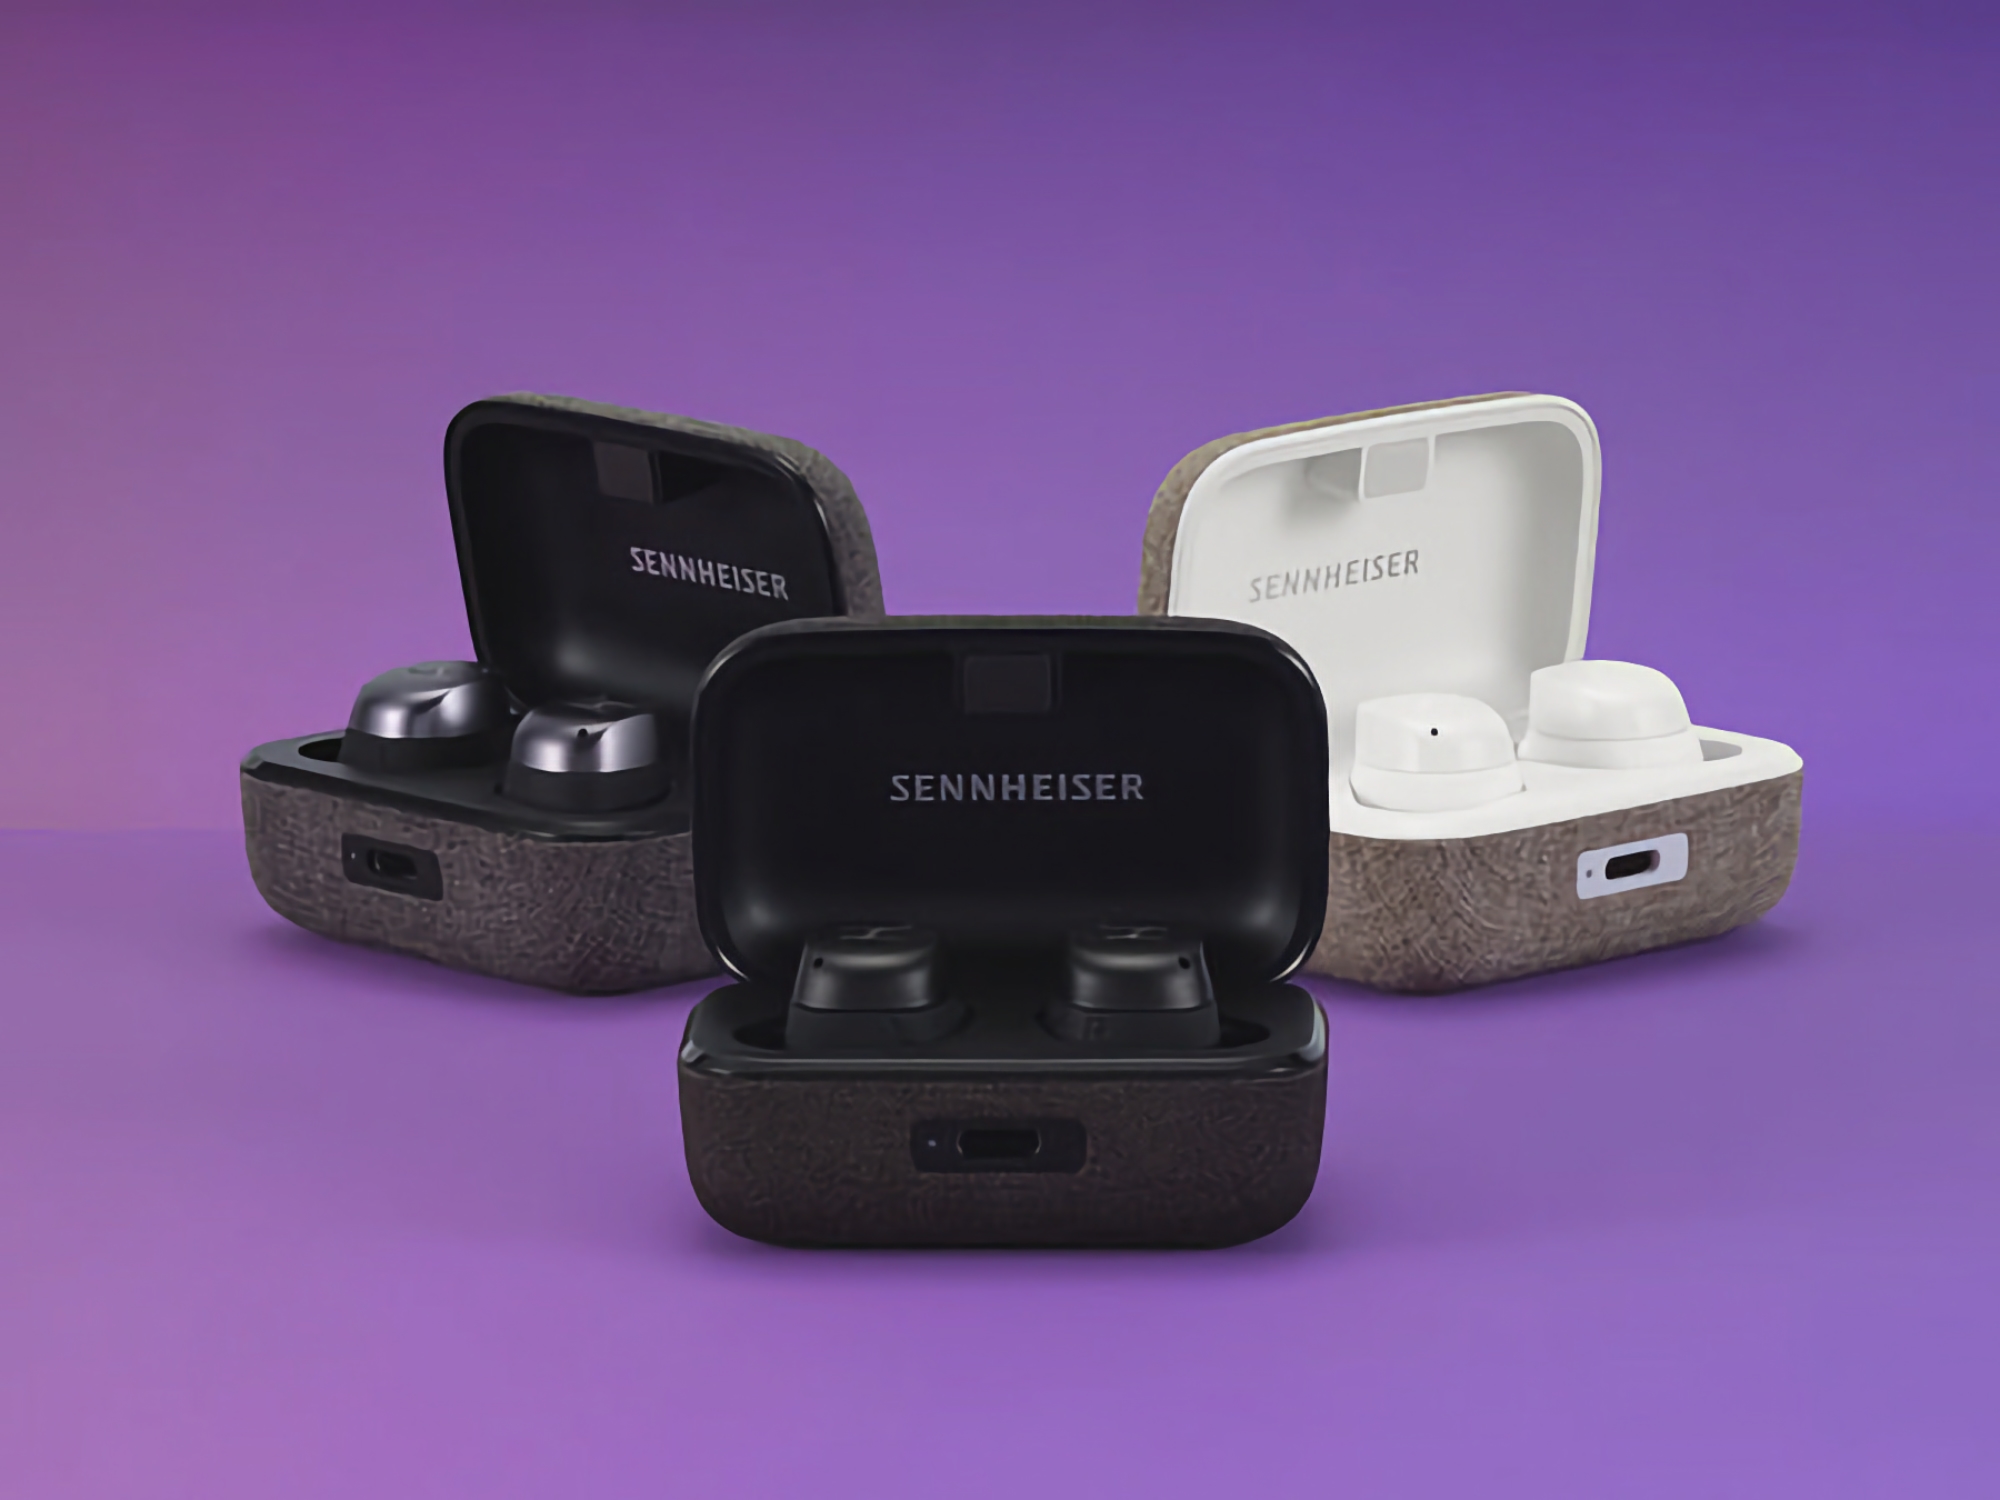 Sennheiser MOMENTUM True Wireless 3 è disponibile su Amazon a 142 dollari (137 dollari di sconto)